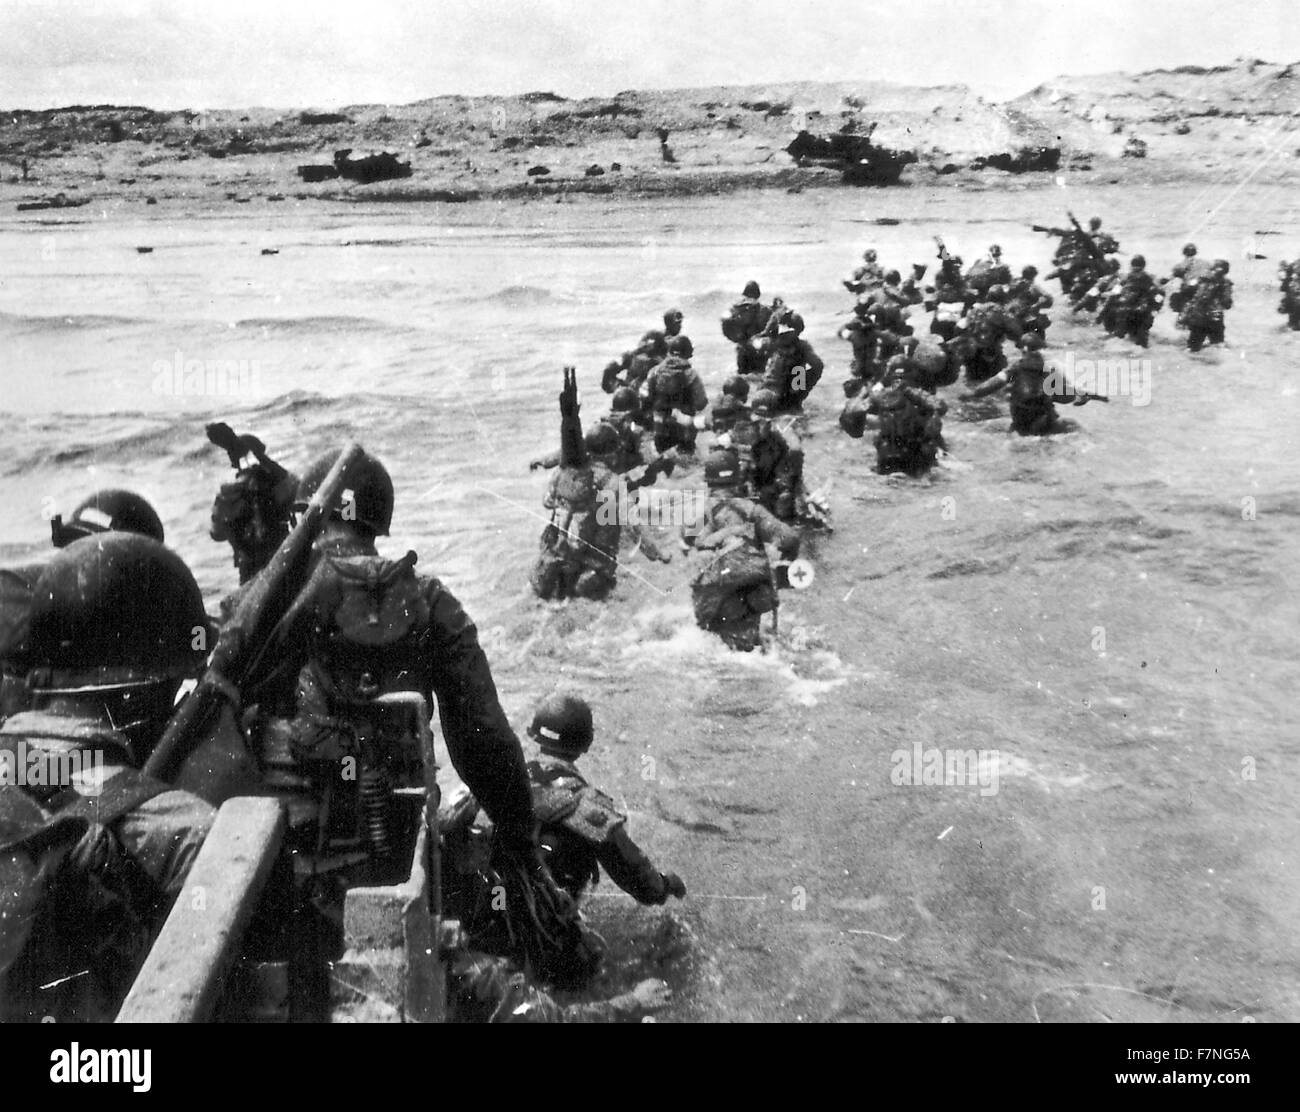 Les forces américaines atterrissent à Utah Beach, France 1944. Utah Beach est le cofe nom d'un des cinq secteurs de l'invasion de la France de l'occupation allemande dans le débarquement en Normandie le 6 juin 1944, au cours de la Seconde Guerre mondiale. Banque D'Images